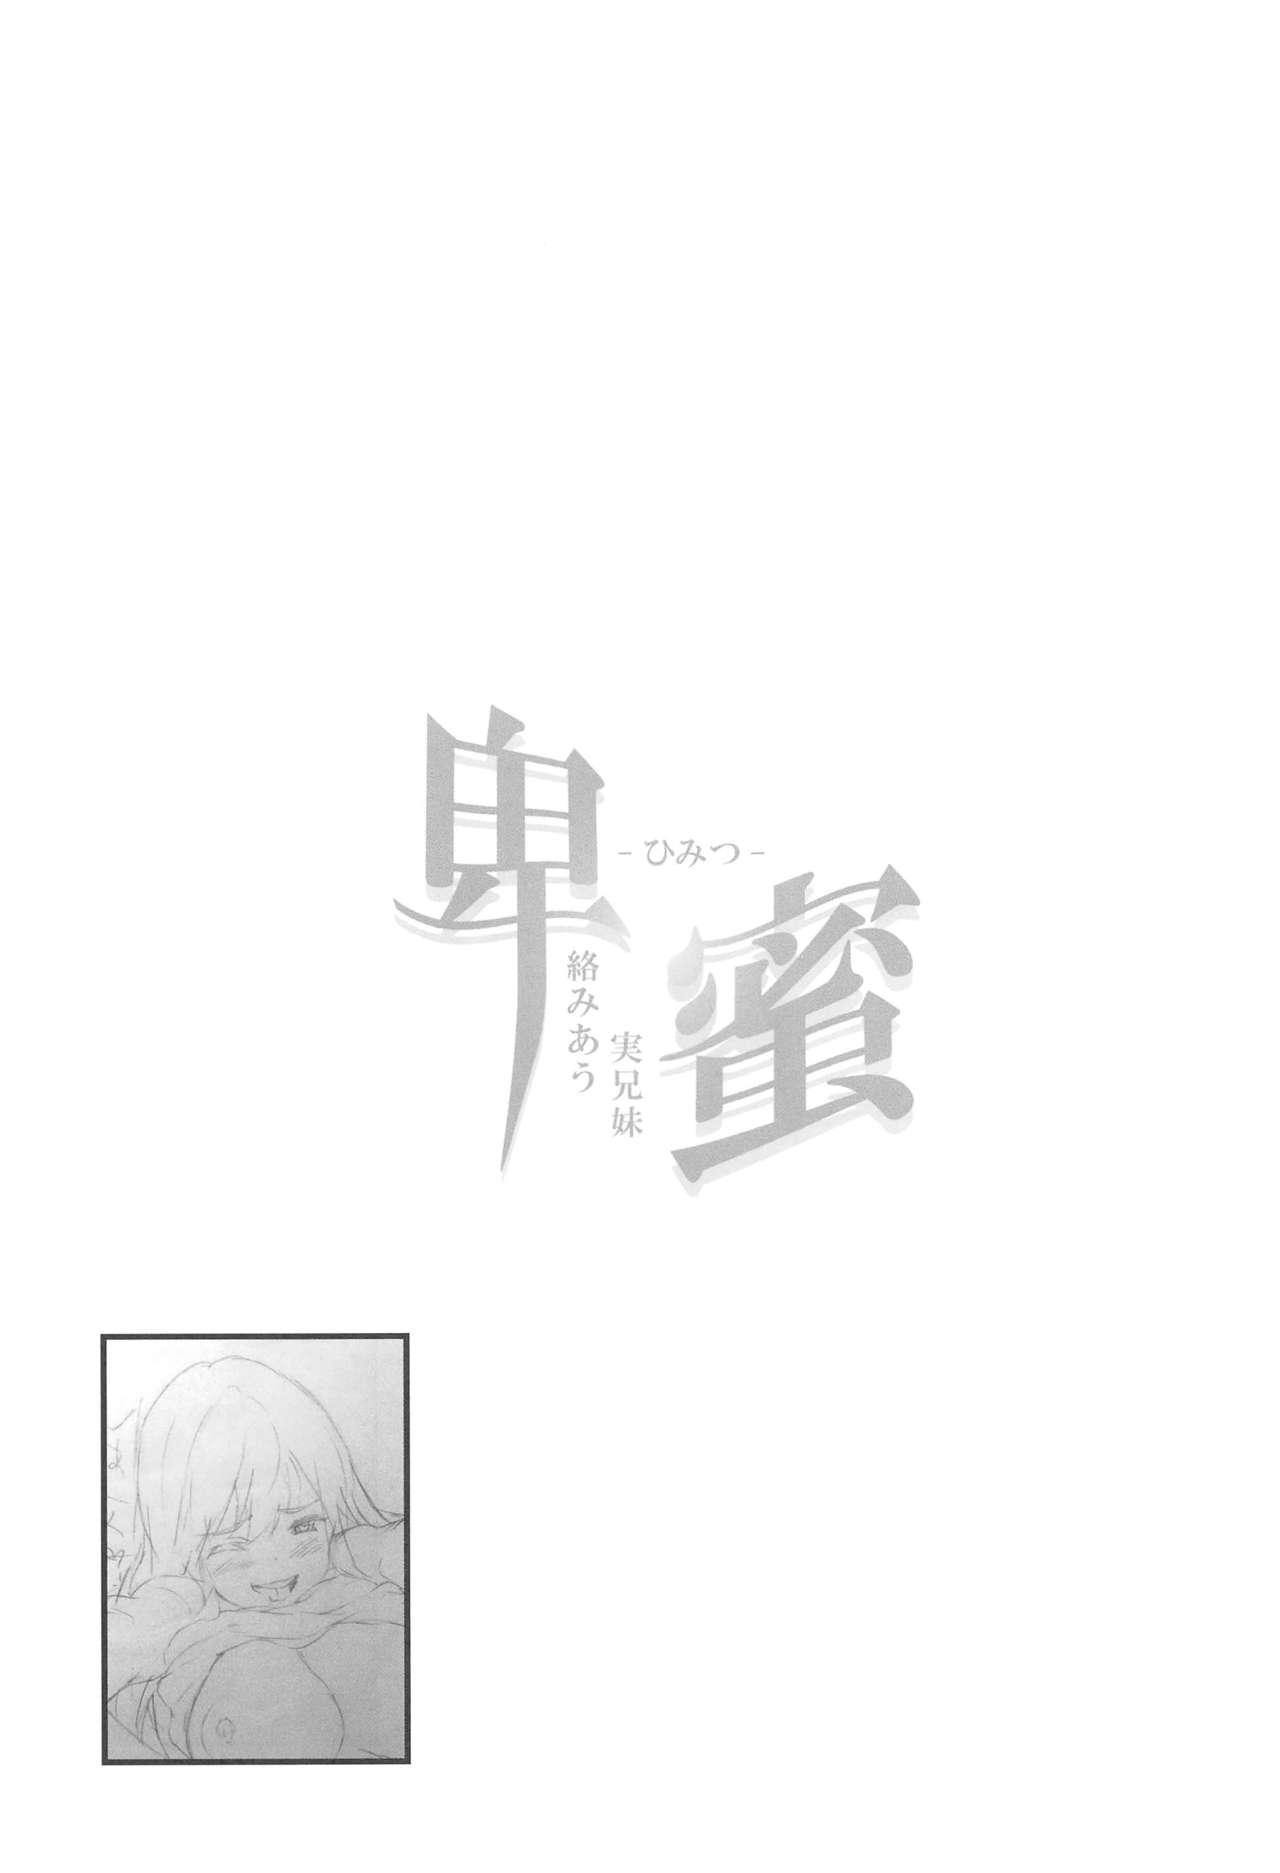 Himitsu 2 & 3 "Zoku 4-gatsu no Owarigoro" "Kuchidomeryou" 23